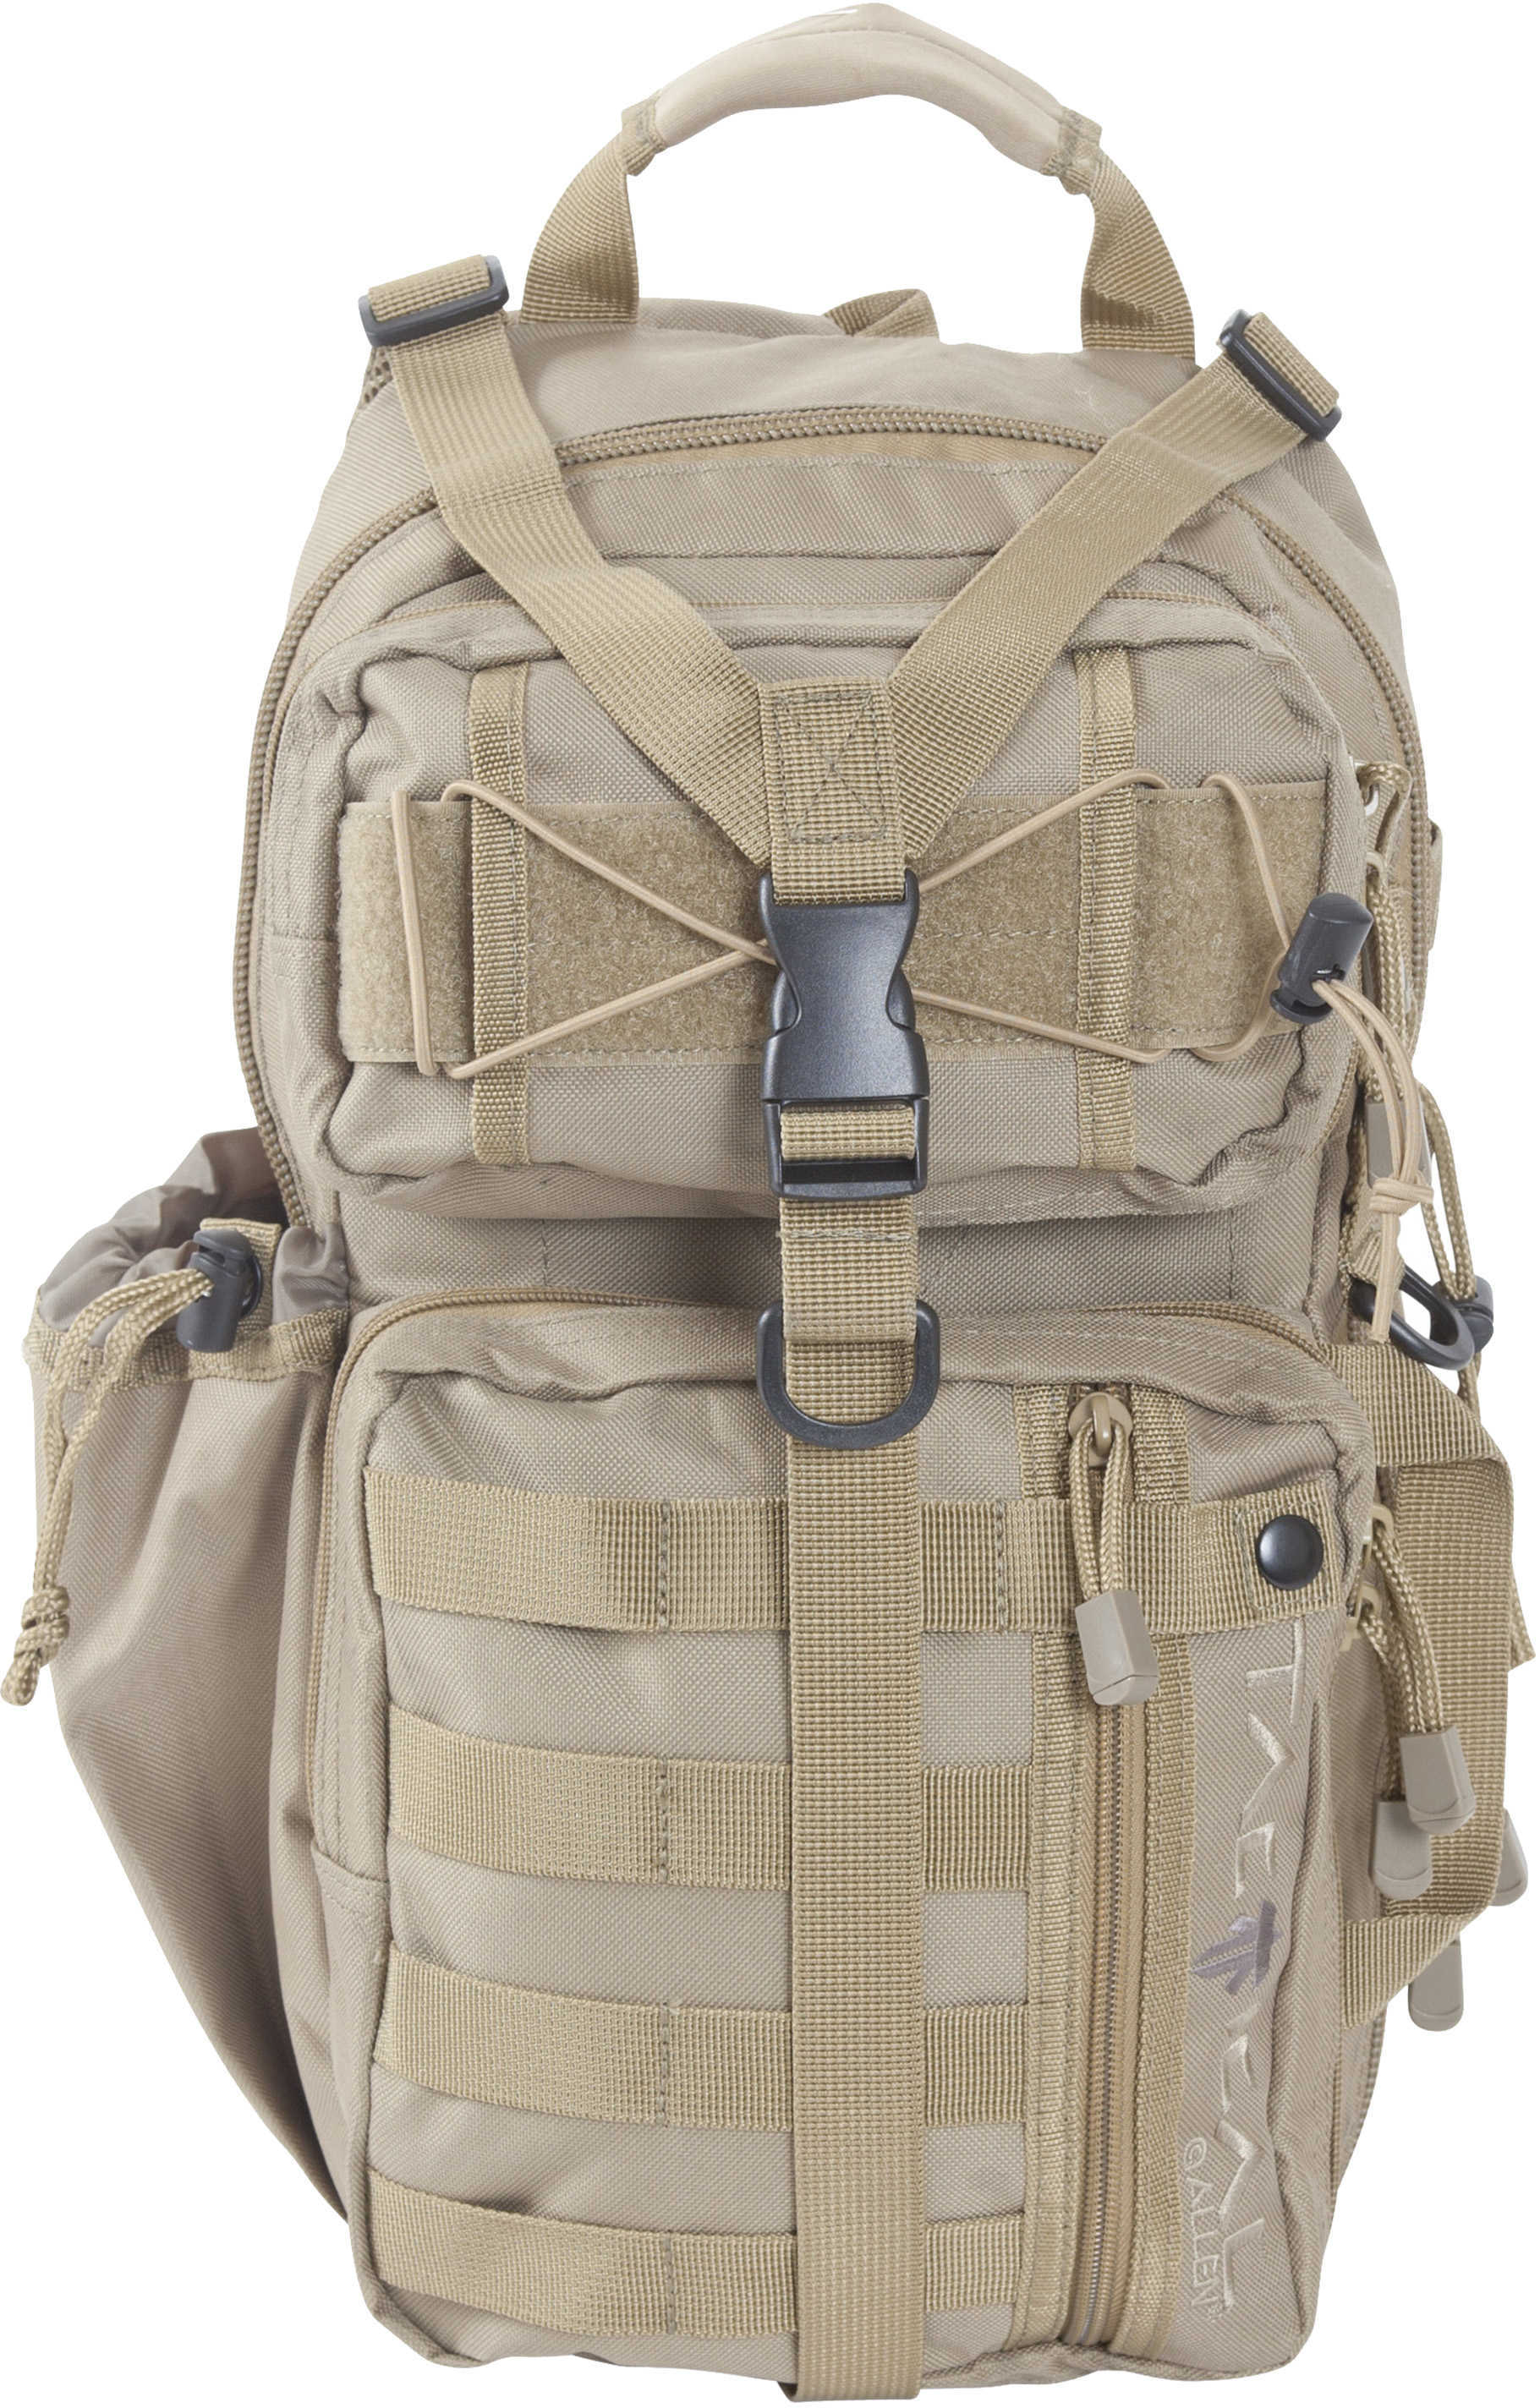 Allen Lite Force Tactical Sling Pack Tan Endura Fabric Design Padded Adjustable Single Shoulder Strap Conceal Carr